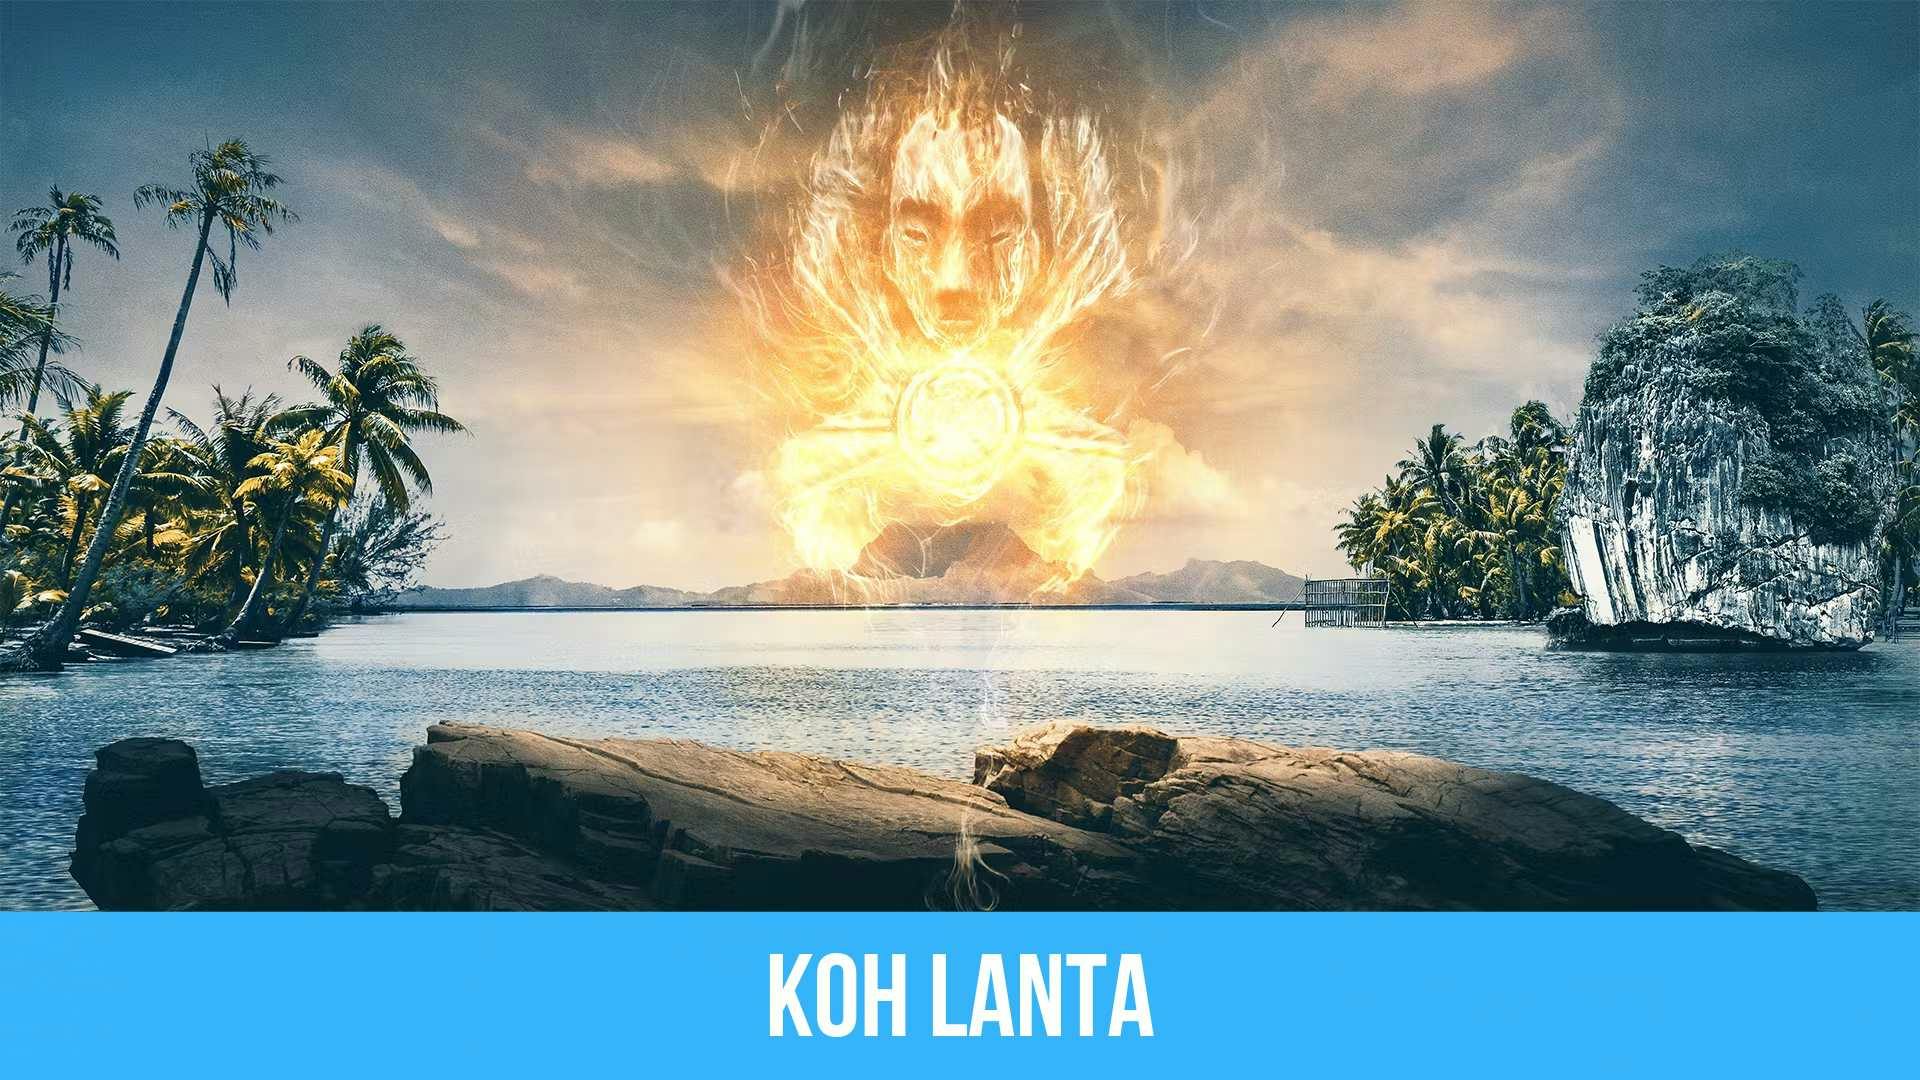 poster de l’île où est tournée l’émission Koh Lanta